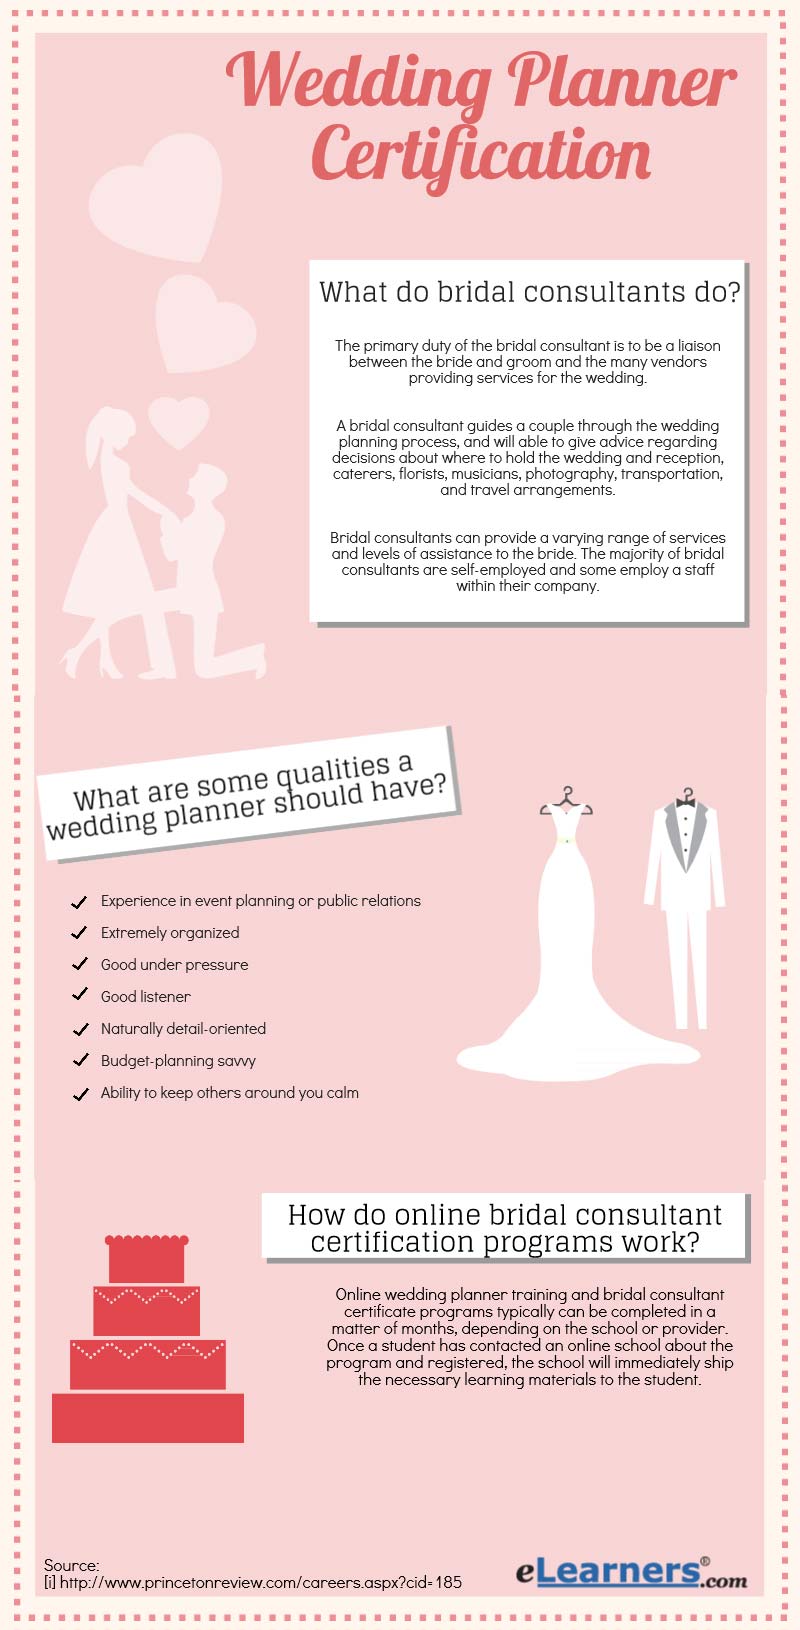 Brides Online Wedding Planner 68